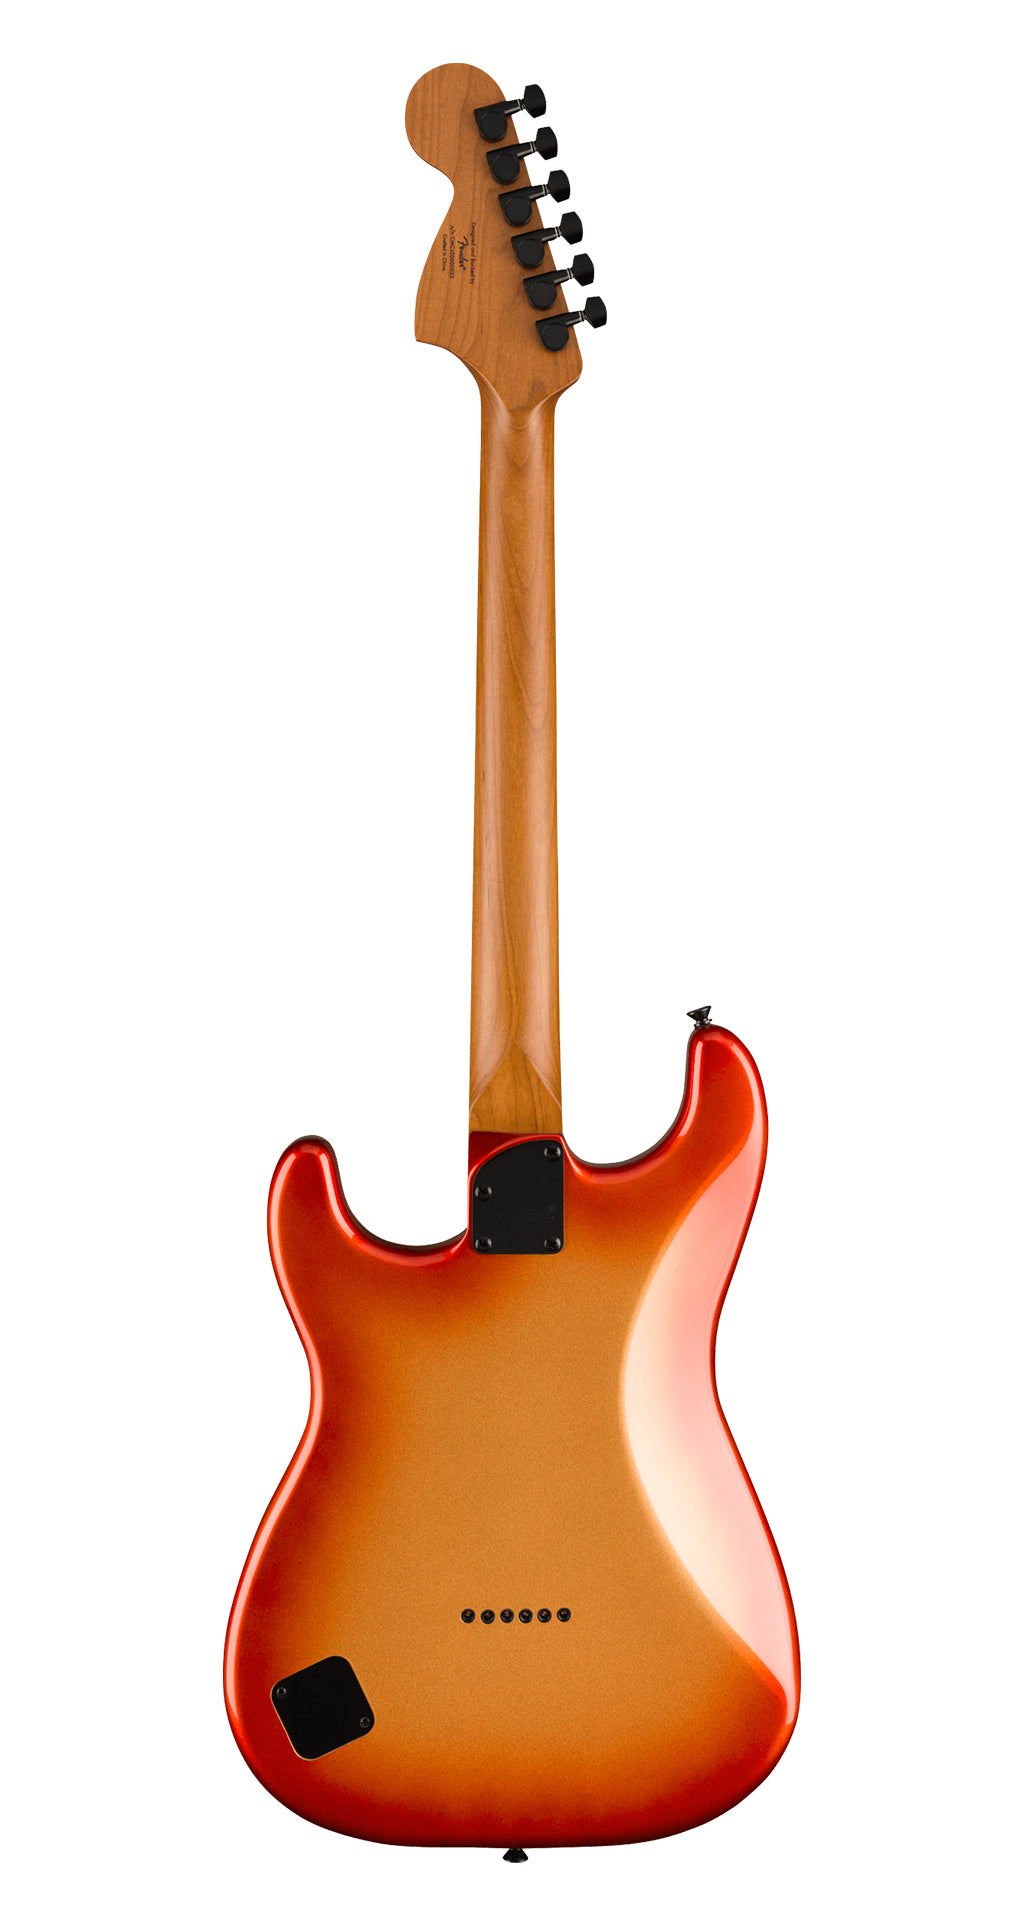 Contemporary Stratocaster® Special